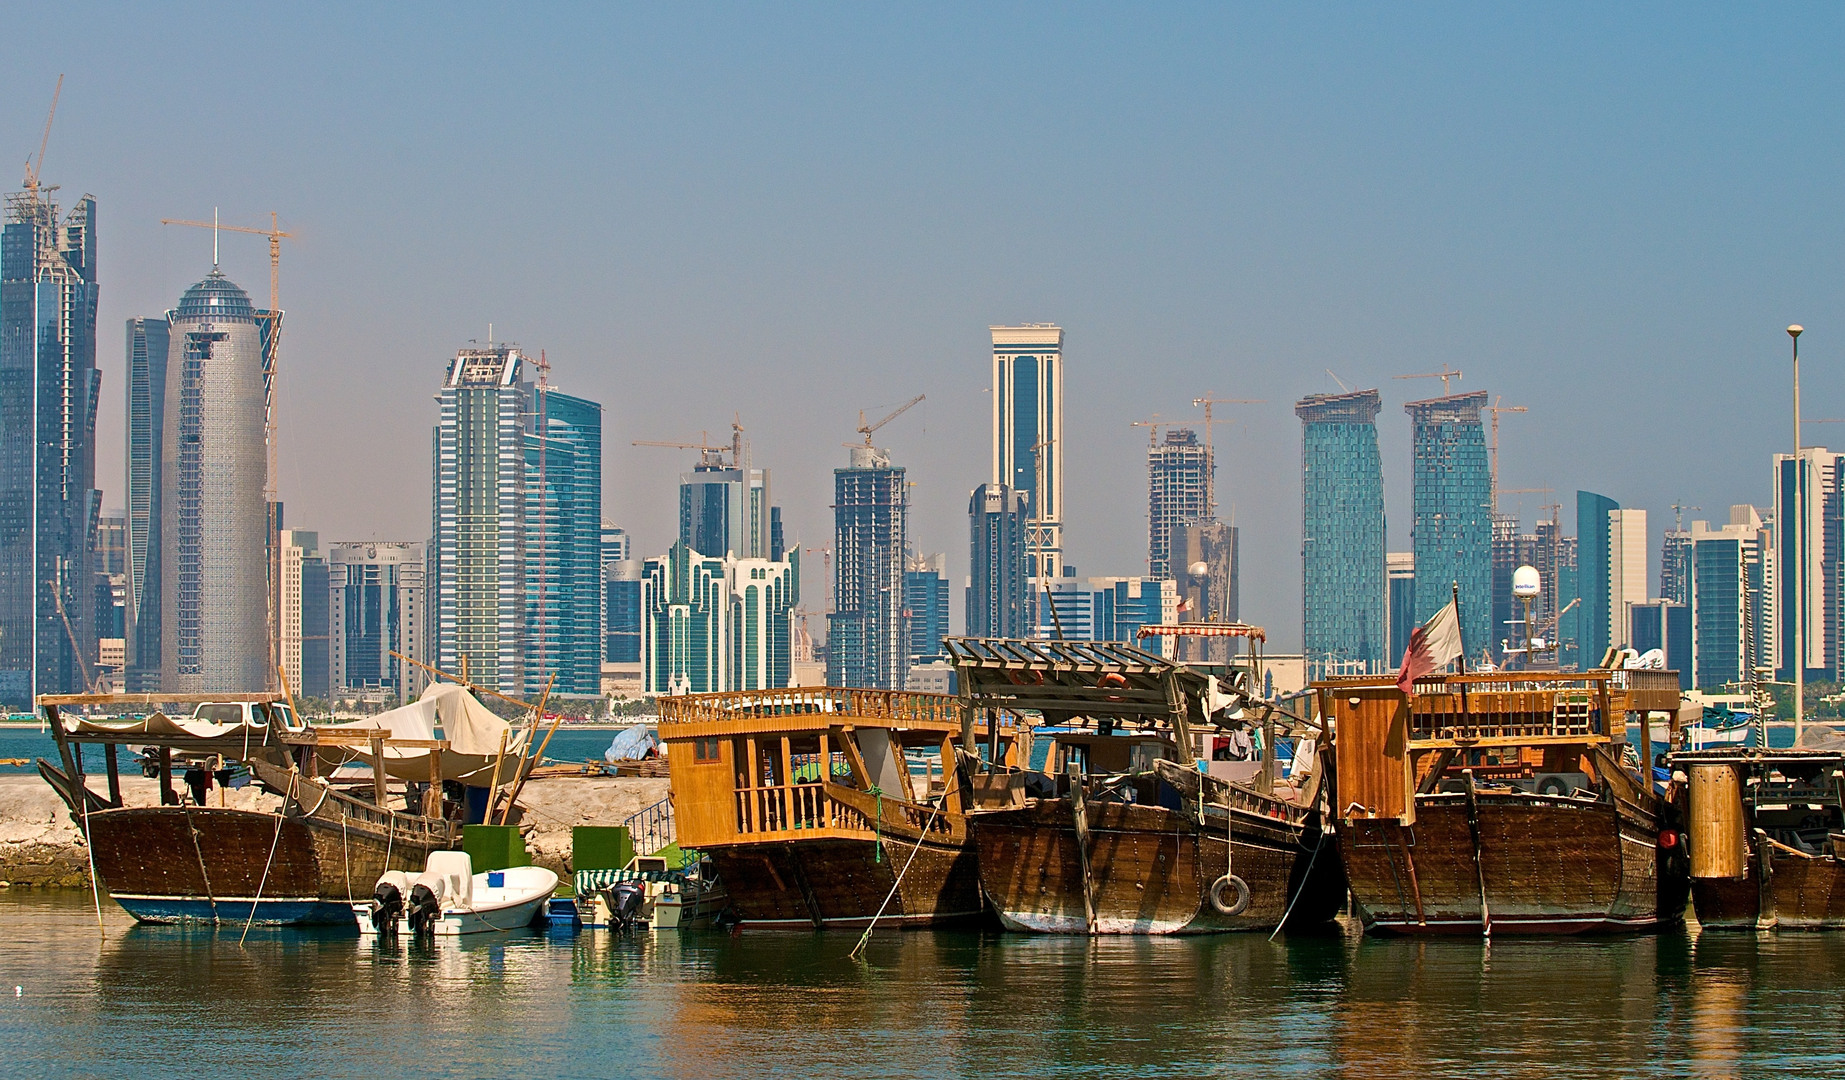 Κατάρ: Νέες  αποδείξεις για κυβερνοπειρατεία που συνδέεται με τα 4 κράτη που επέβαλλαν διπλωματικό αποκλεισμό